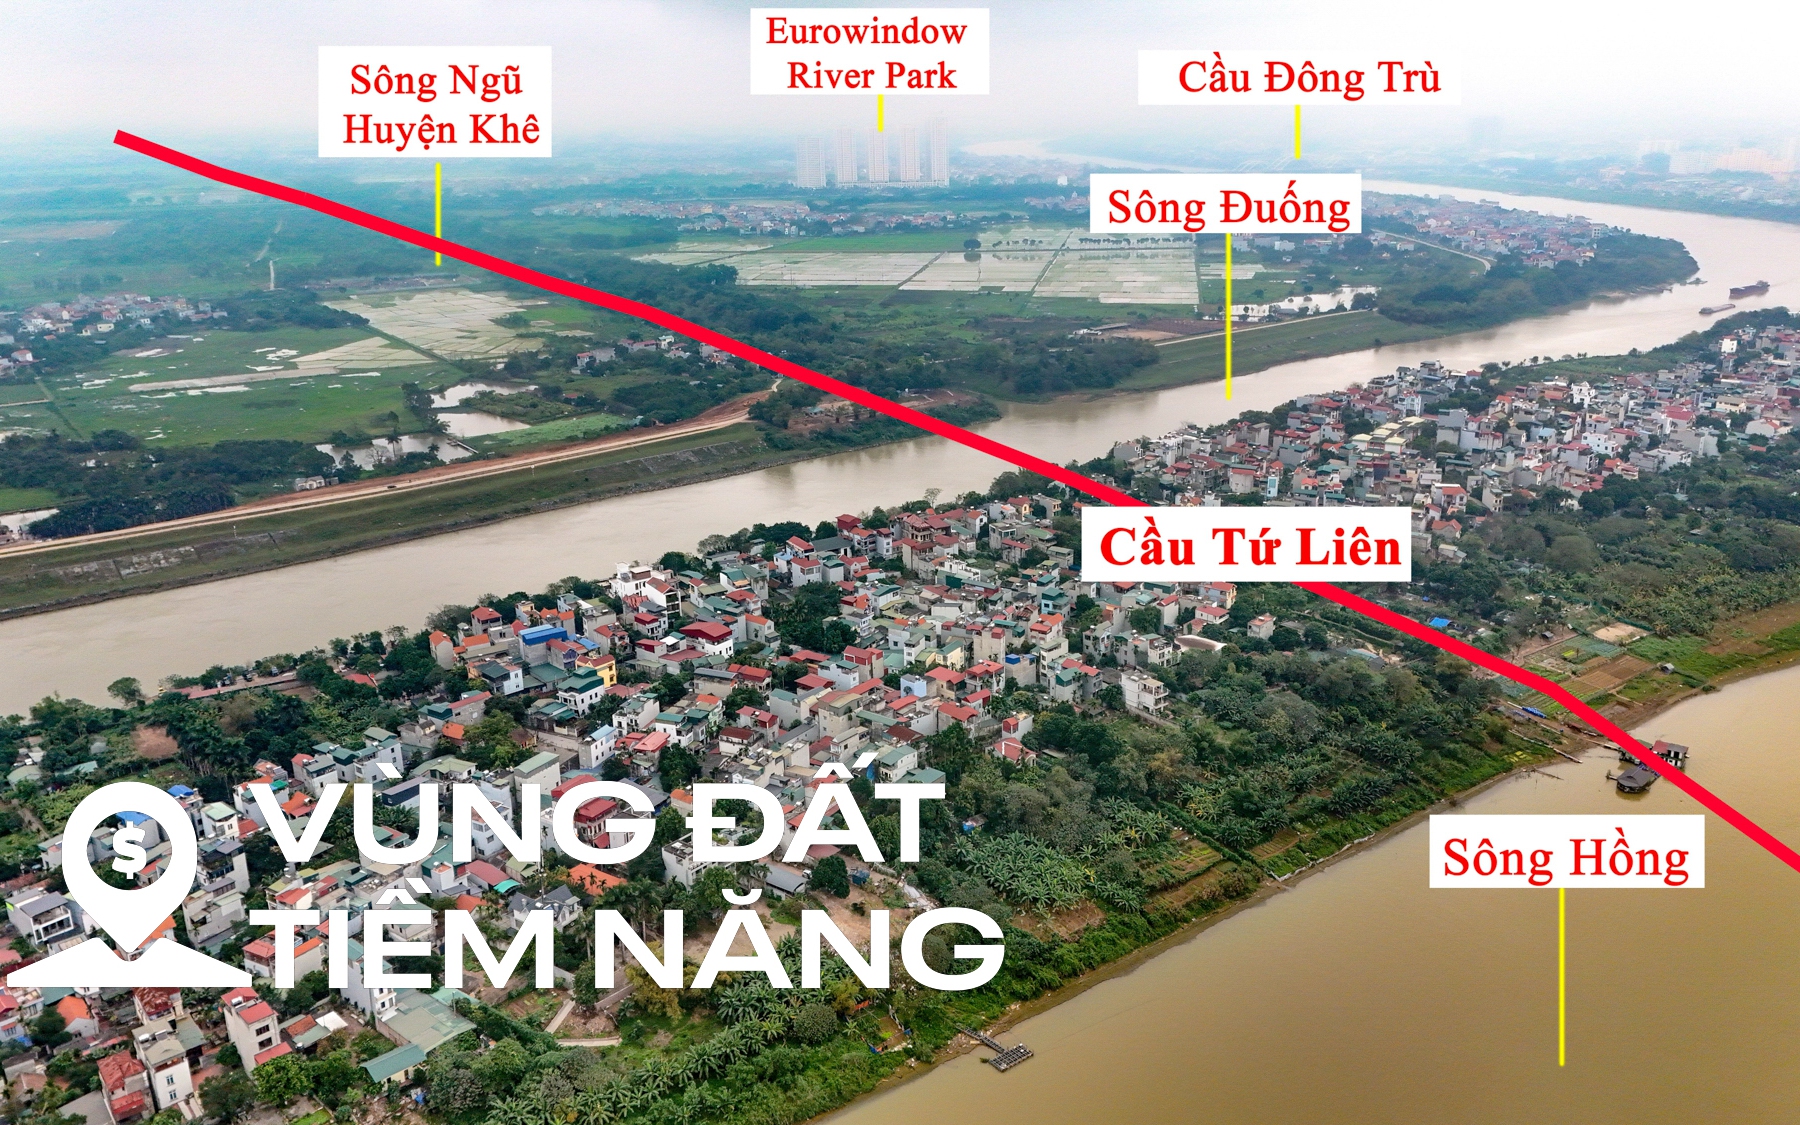 Khu vực sắp được xây cầu 20.000 tỷ đồng vượt 2 con sông lớn, đi qua đại dự án của Vinhomes ở Hà Nội